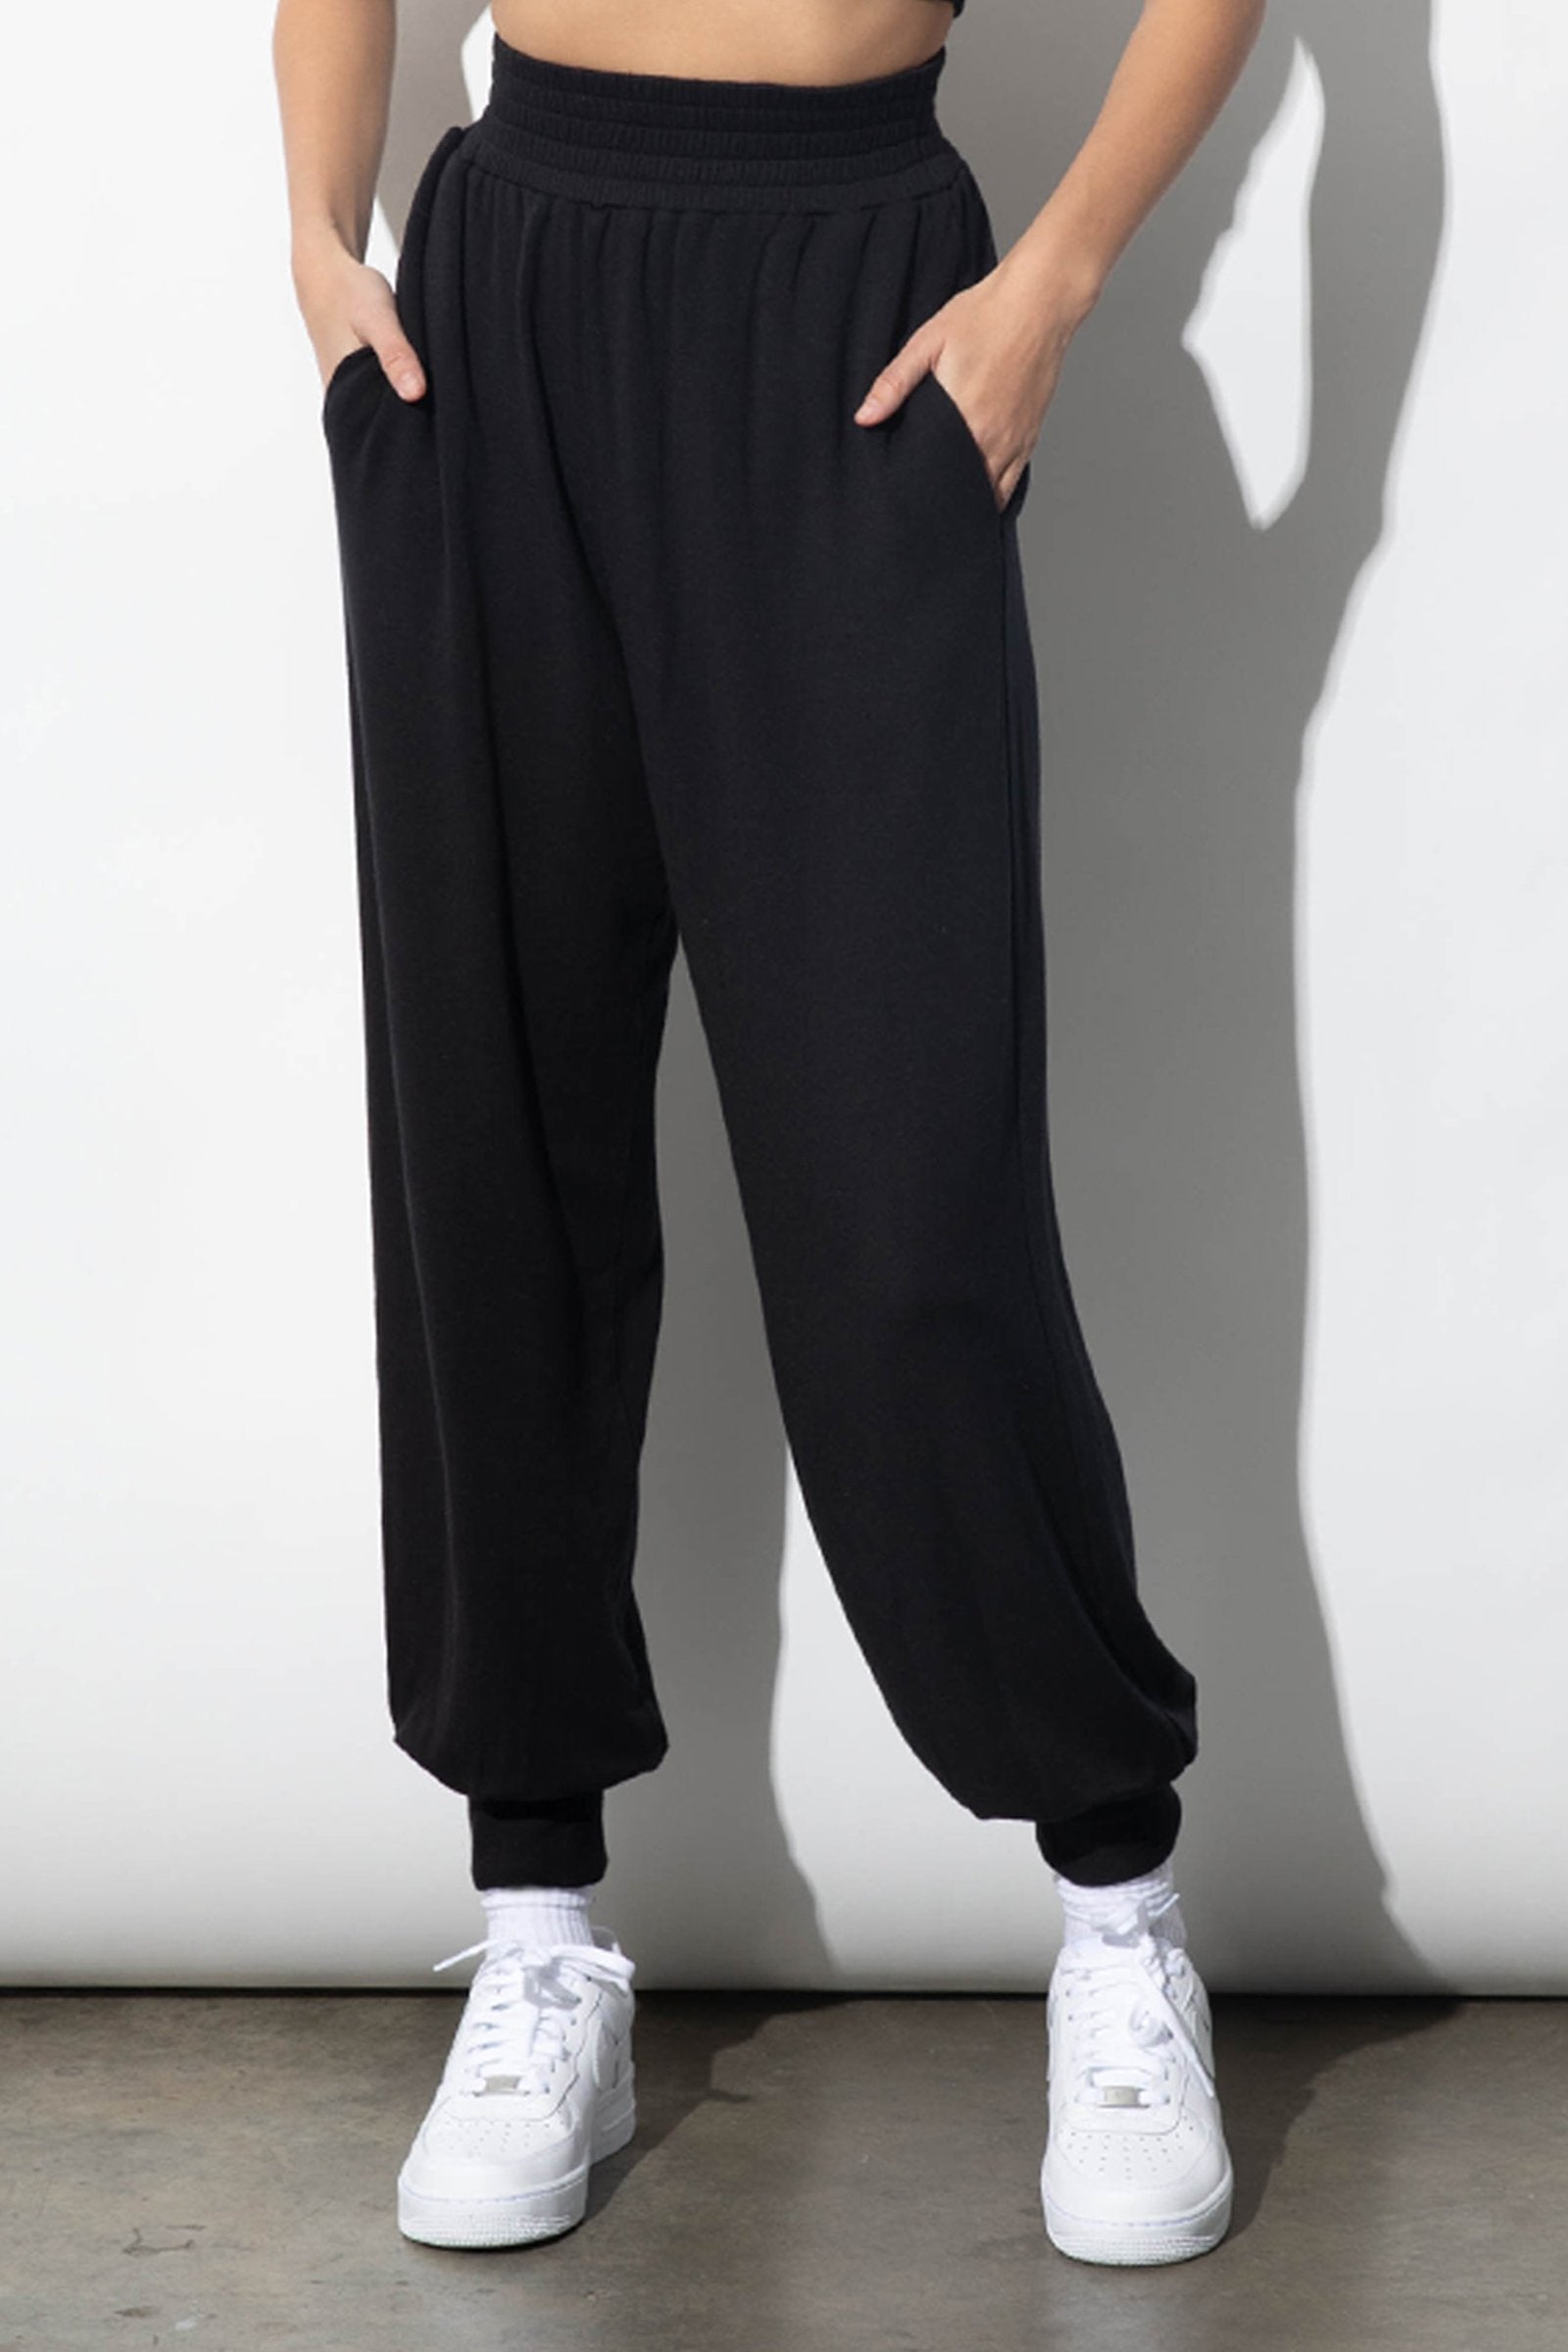 Harlow Black Modal Ultrasoft Fleece Sweatpants